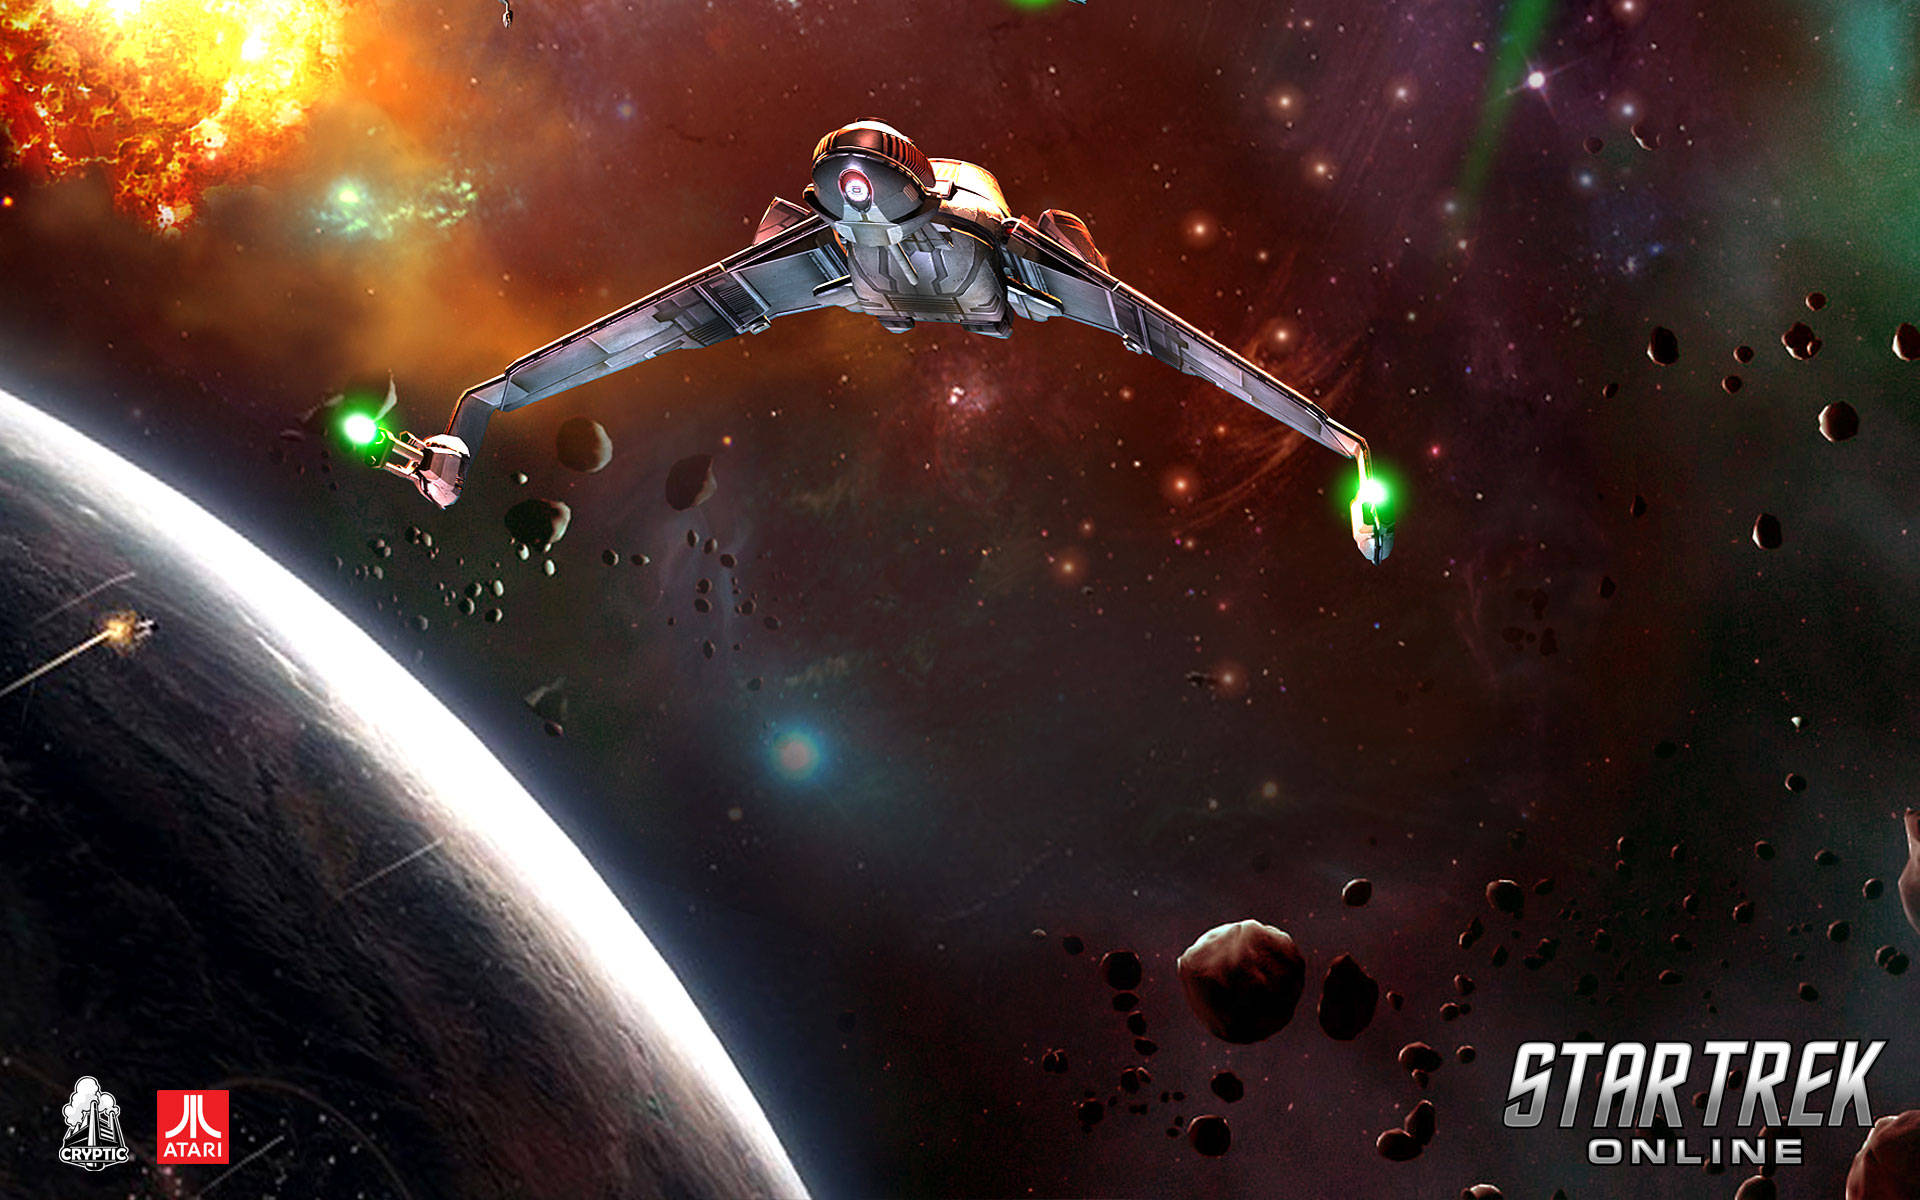 Star Trek Starship In Space Star Trek Online Background